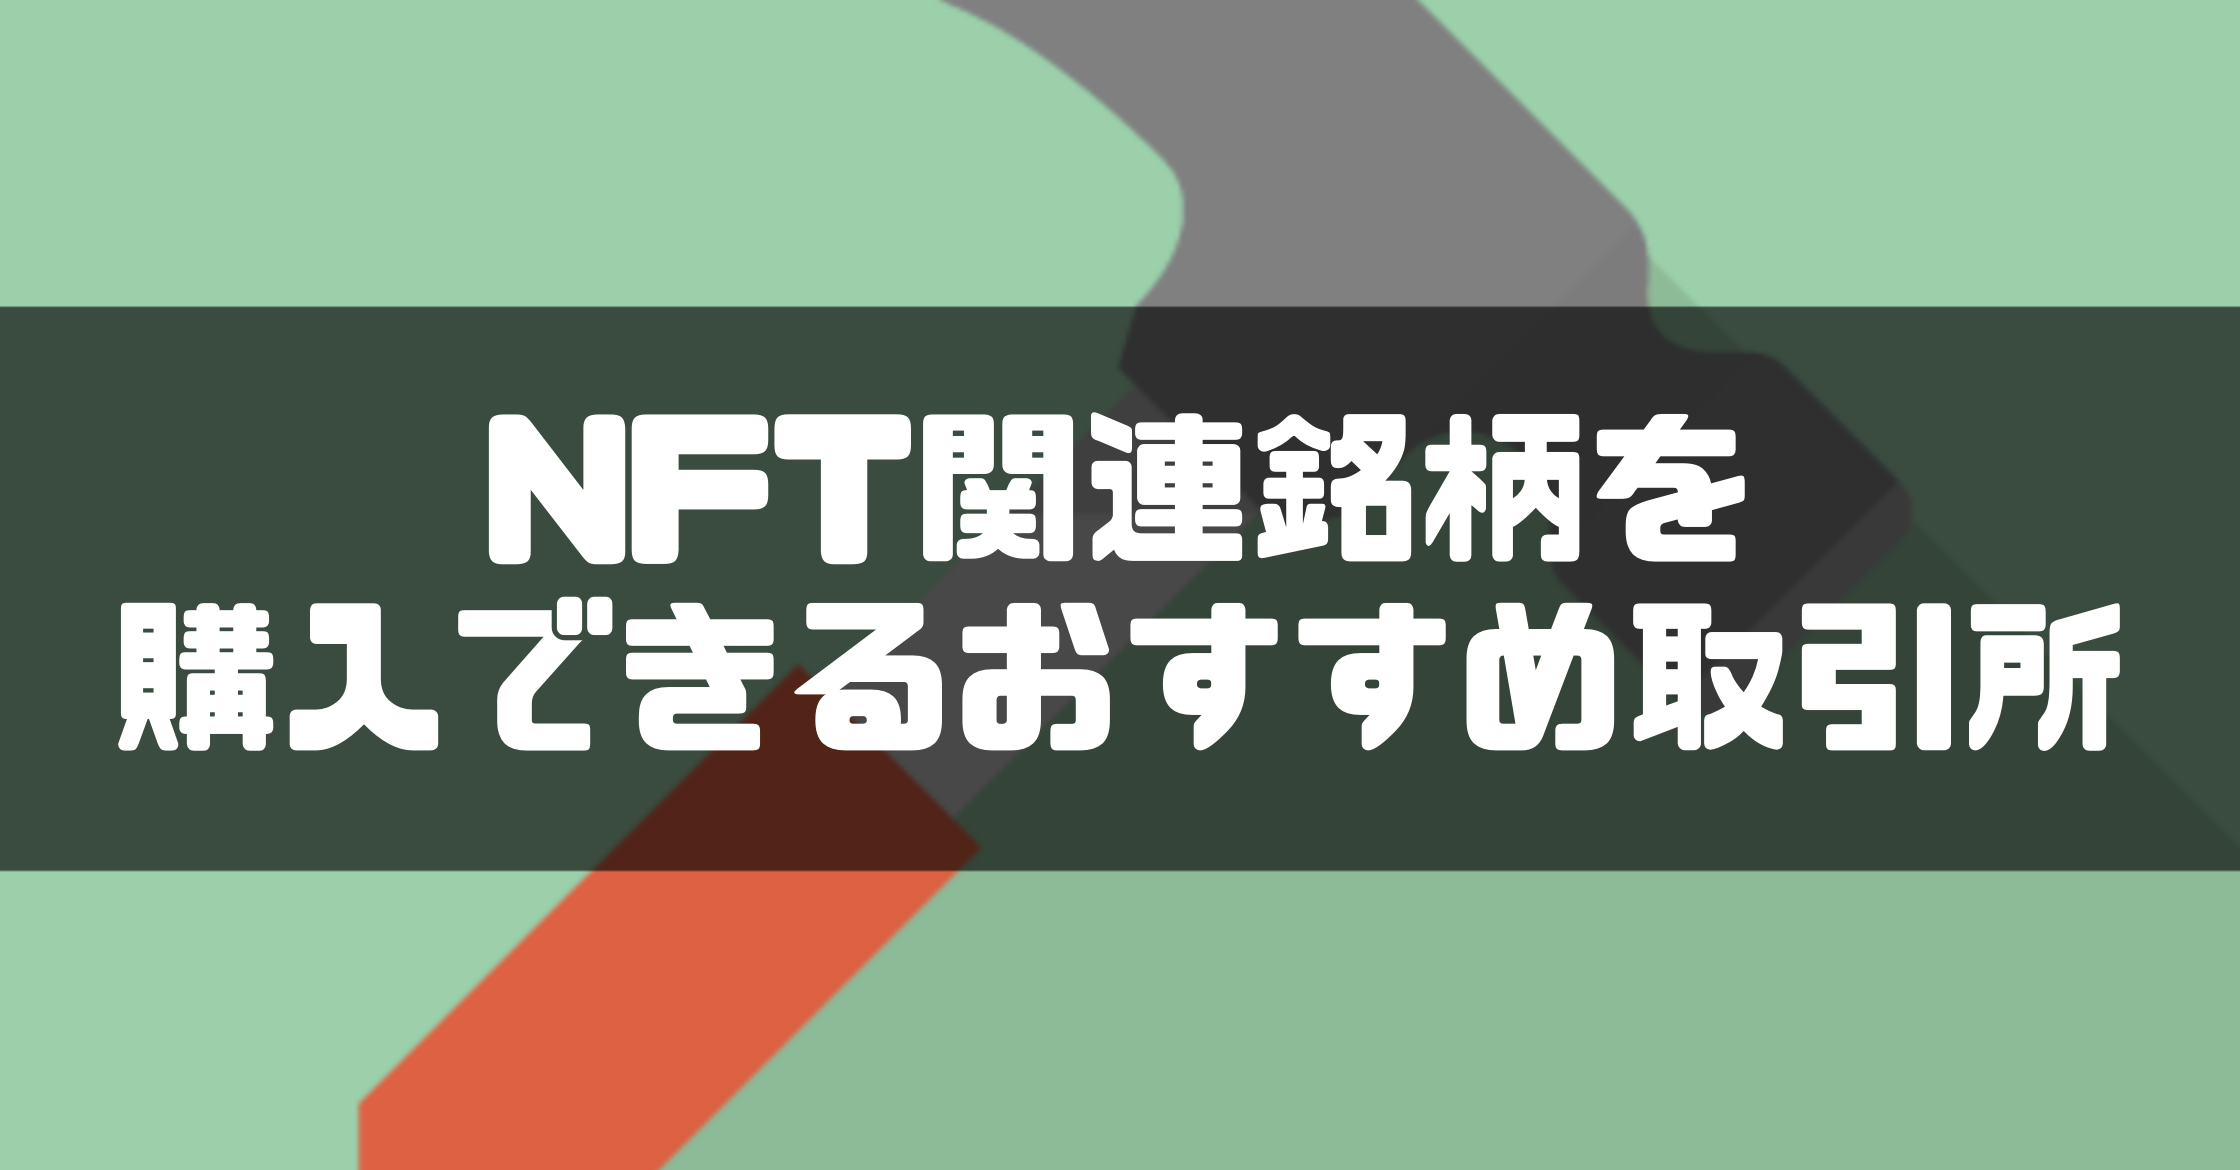 NFT_買い方_NFT関連銘柄を購入できるおすすめ取引所